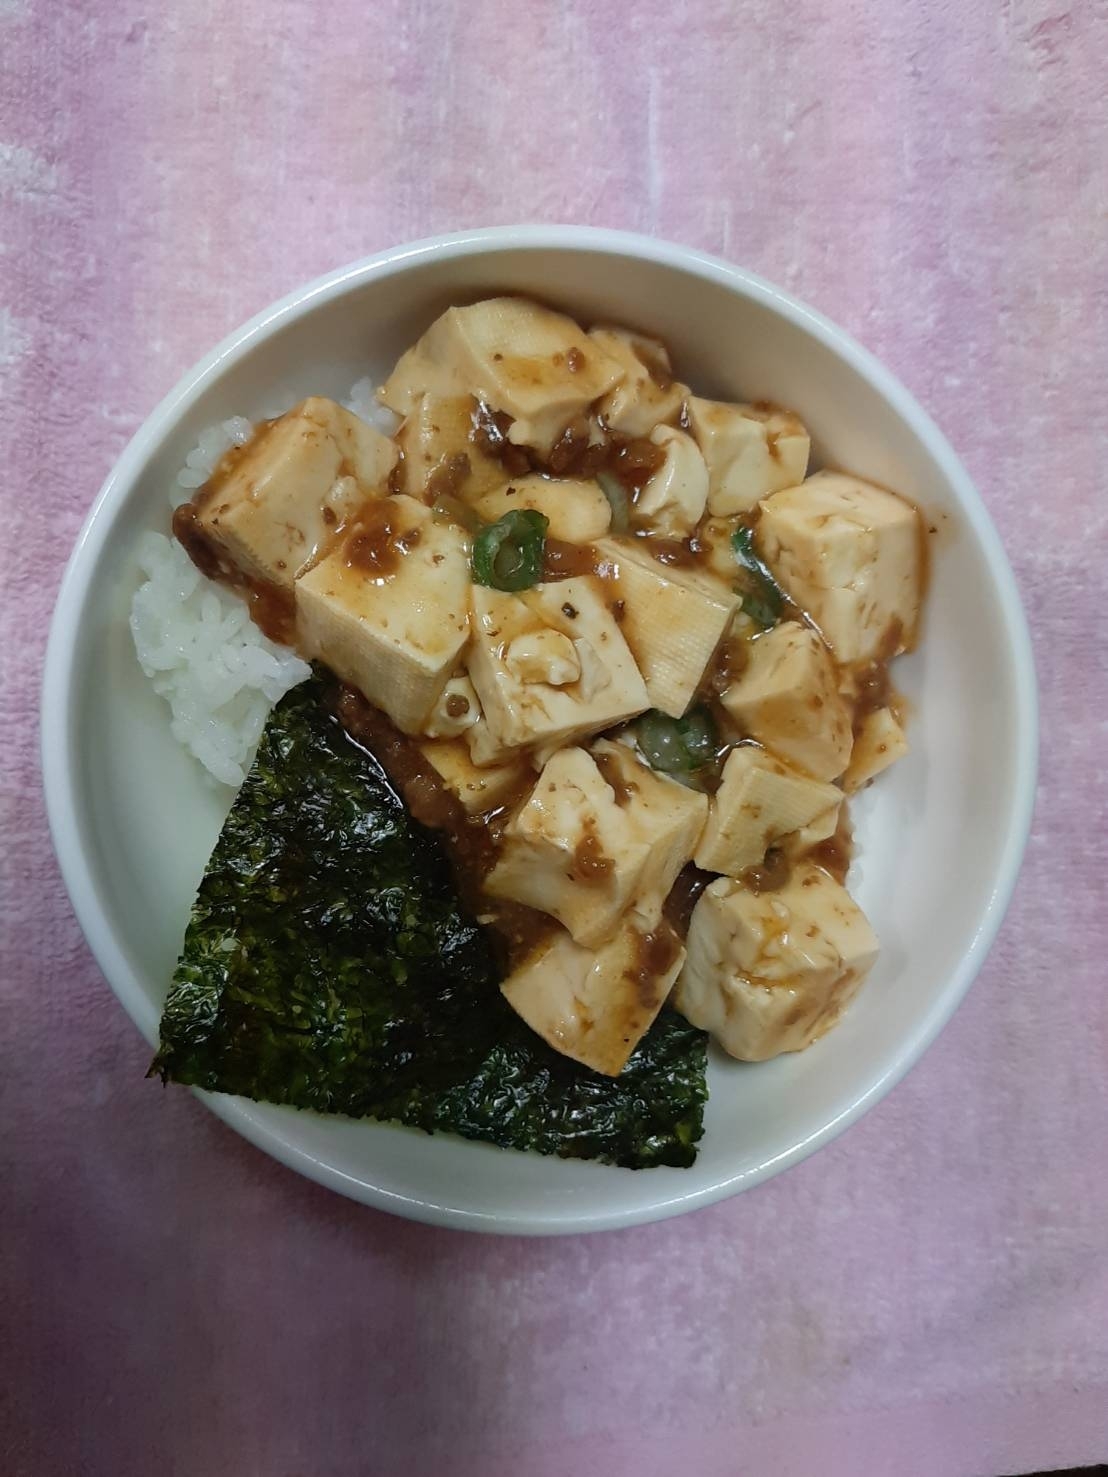 韓国のりをのせた麻婆豆腐丼